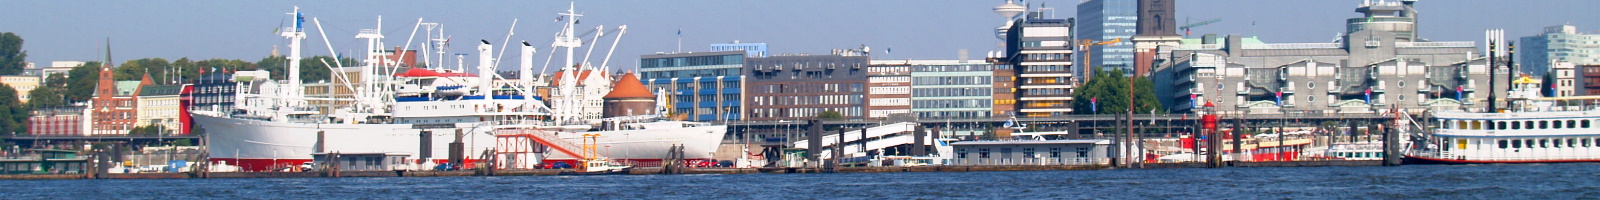 Hamburg Hafen Landungsbruecken